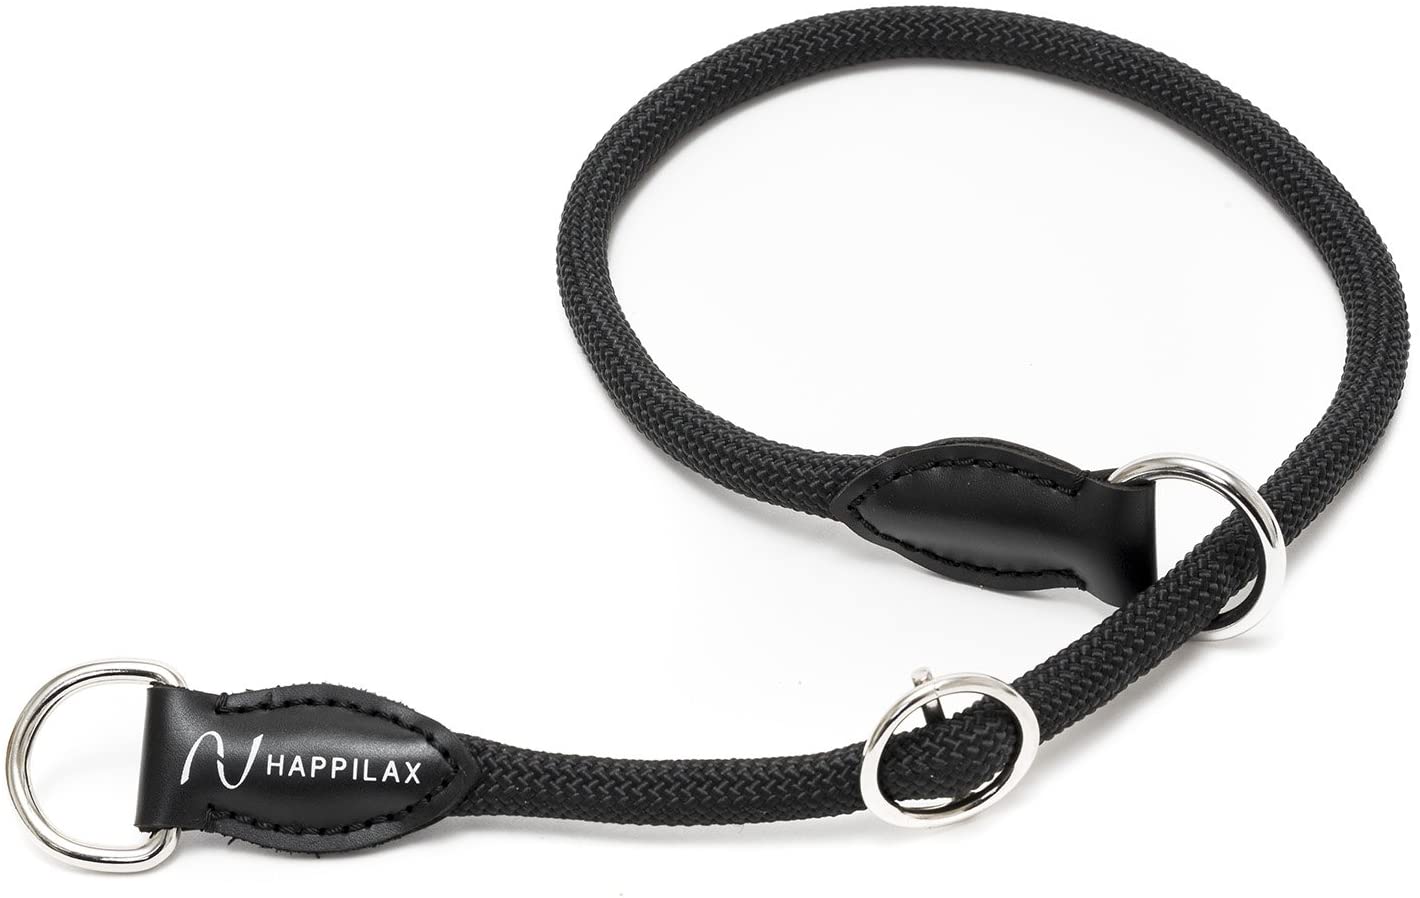  Happilax - Collar de Cuerda para Perro Mediano con Tope Ajustable 